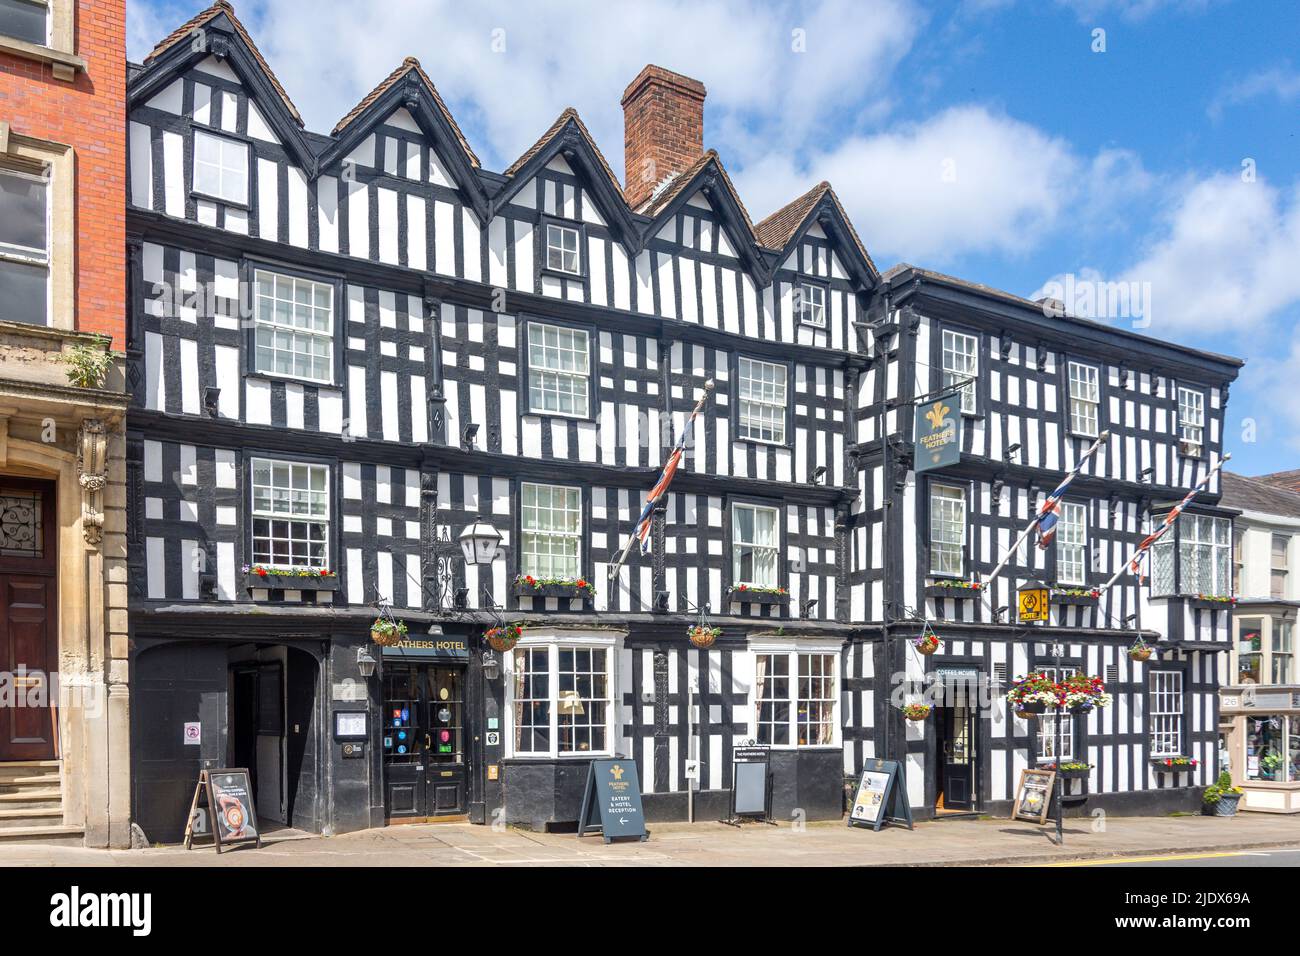 16th Century The Feathers Hotel, High Street, Ledbury, Herefordshire, England, United Kingdom Stock Photo